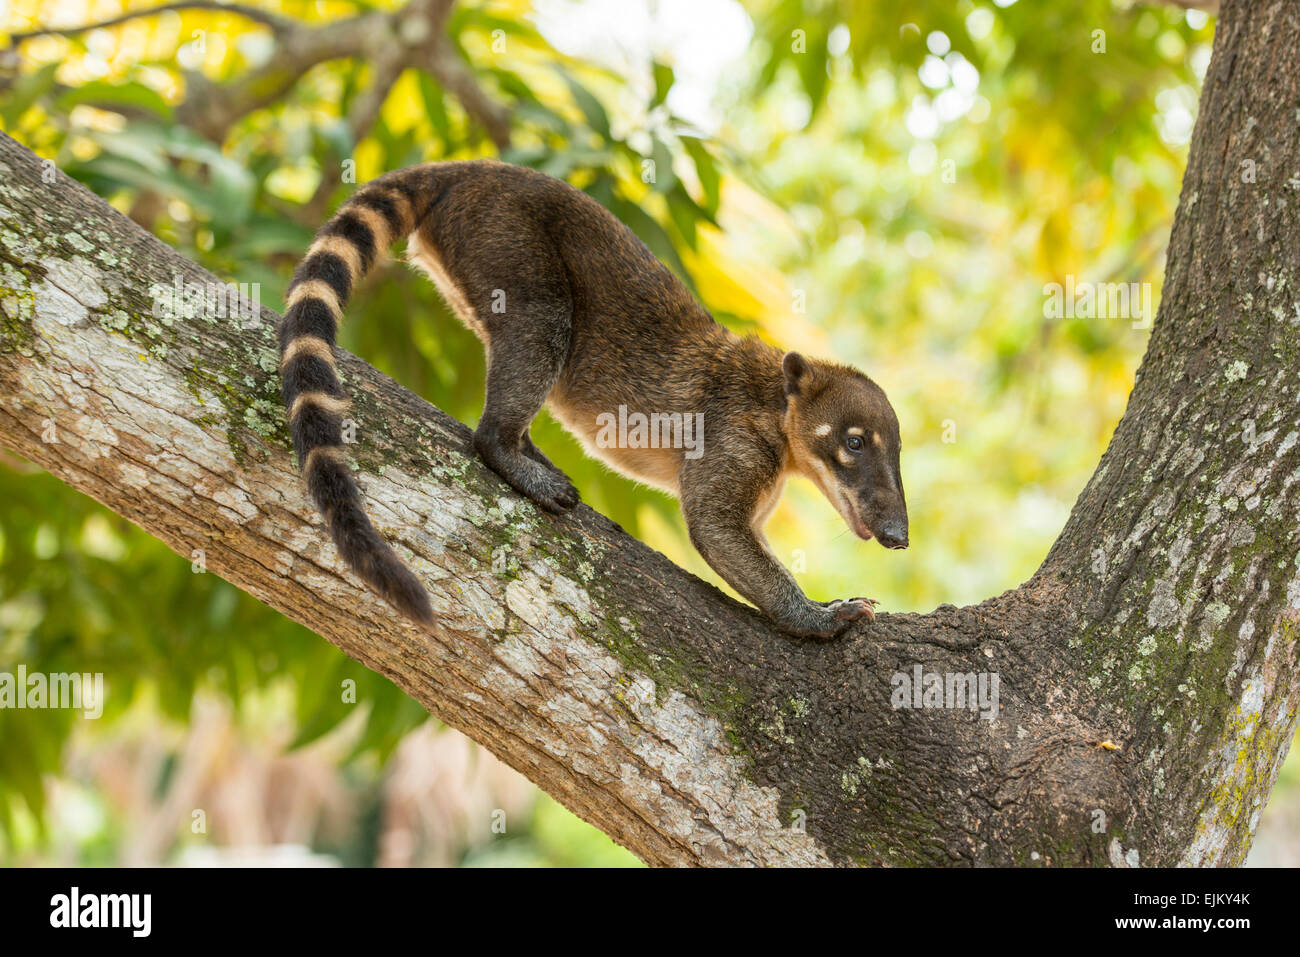 South American coati, or ring-tailed coati, Nasua nasua, Galibi, Suriname Stock Photo